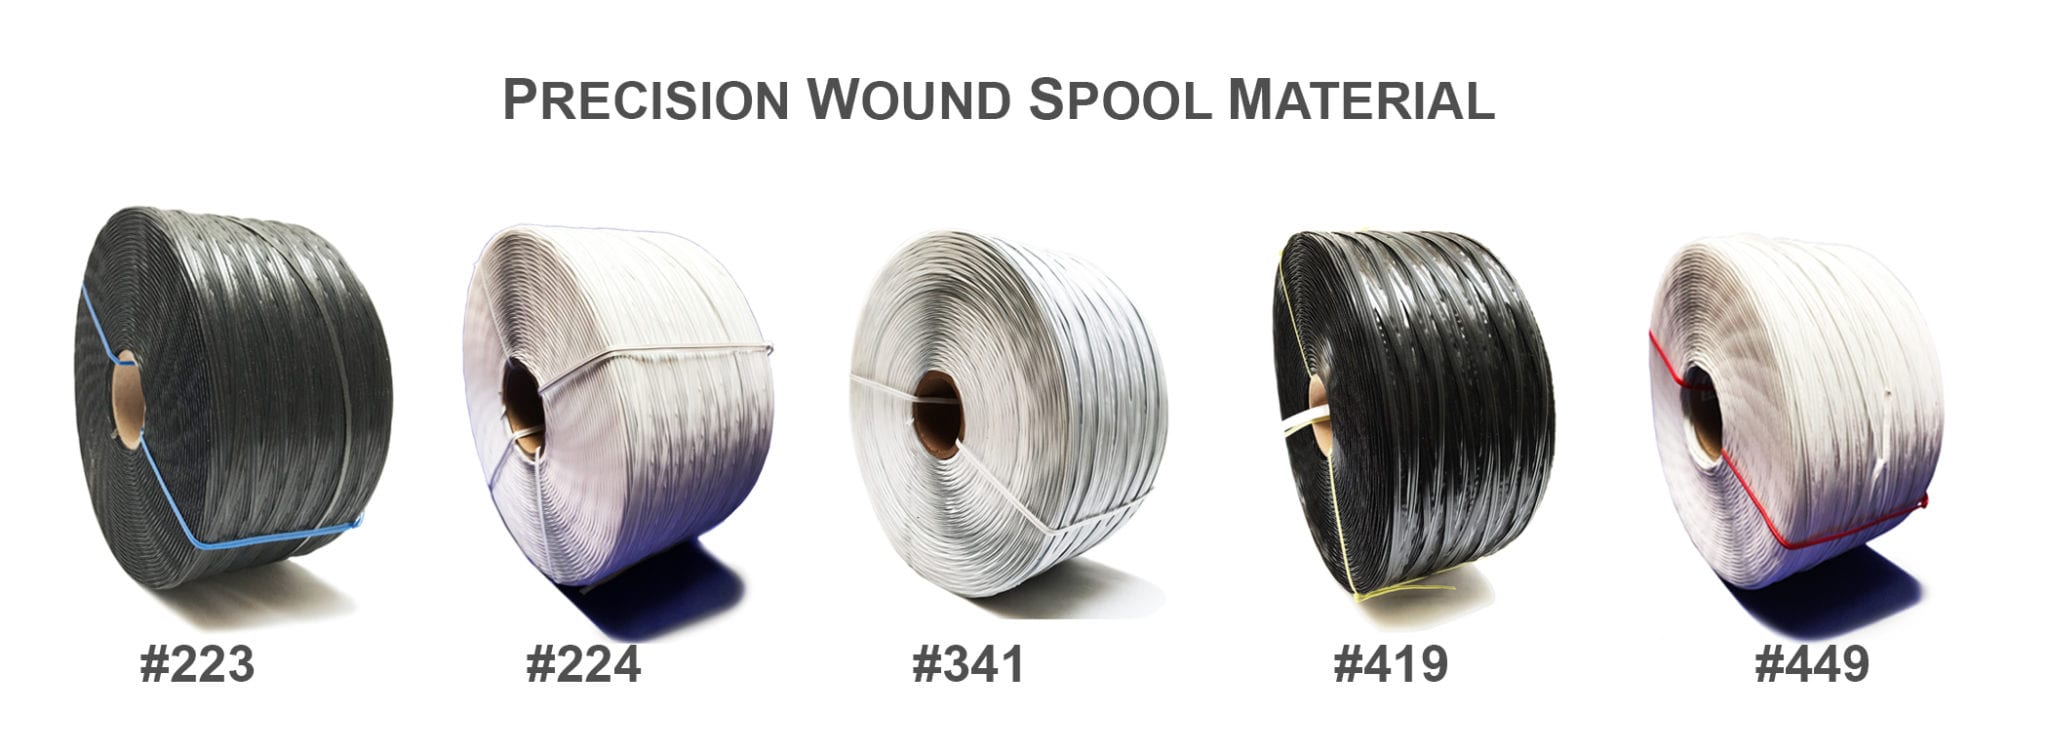 Plas-Ties Precision Wound Spool Material